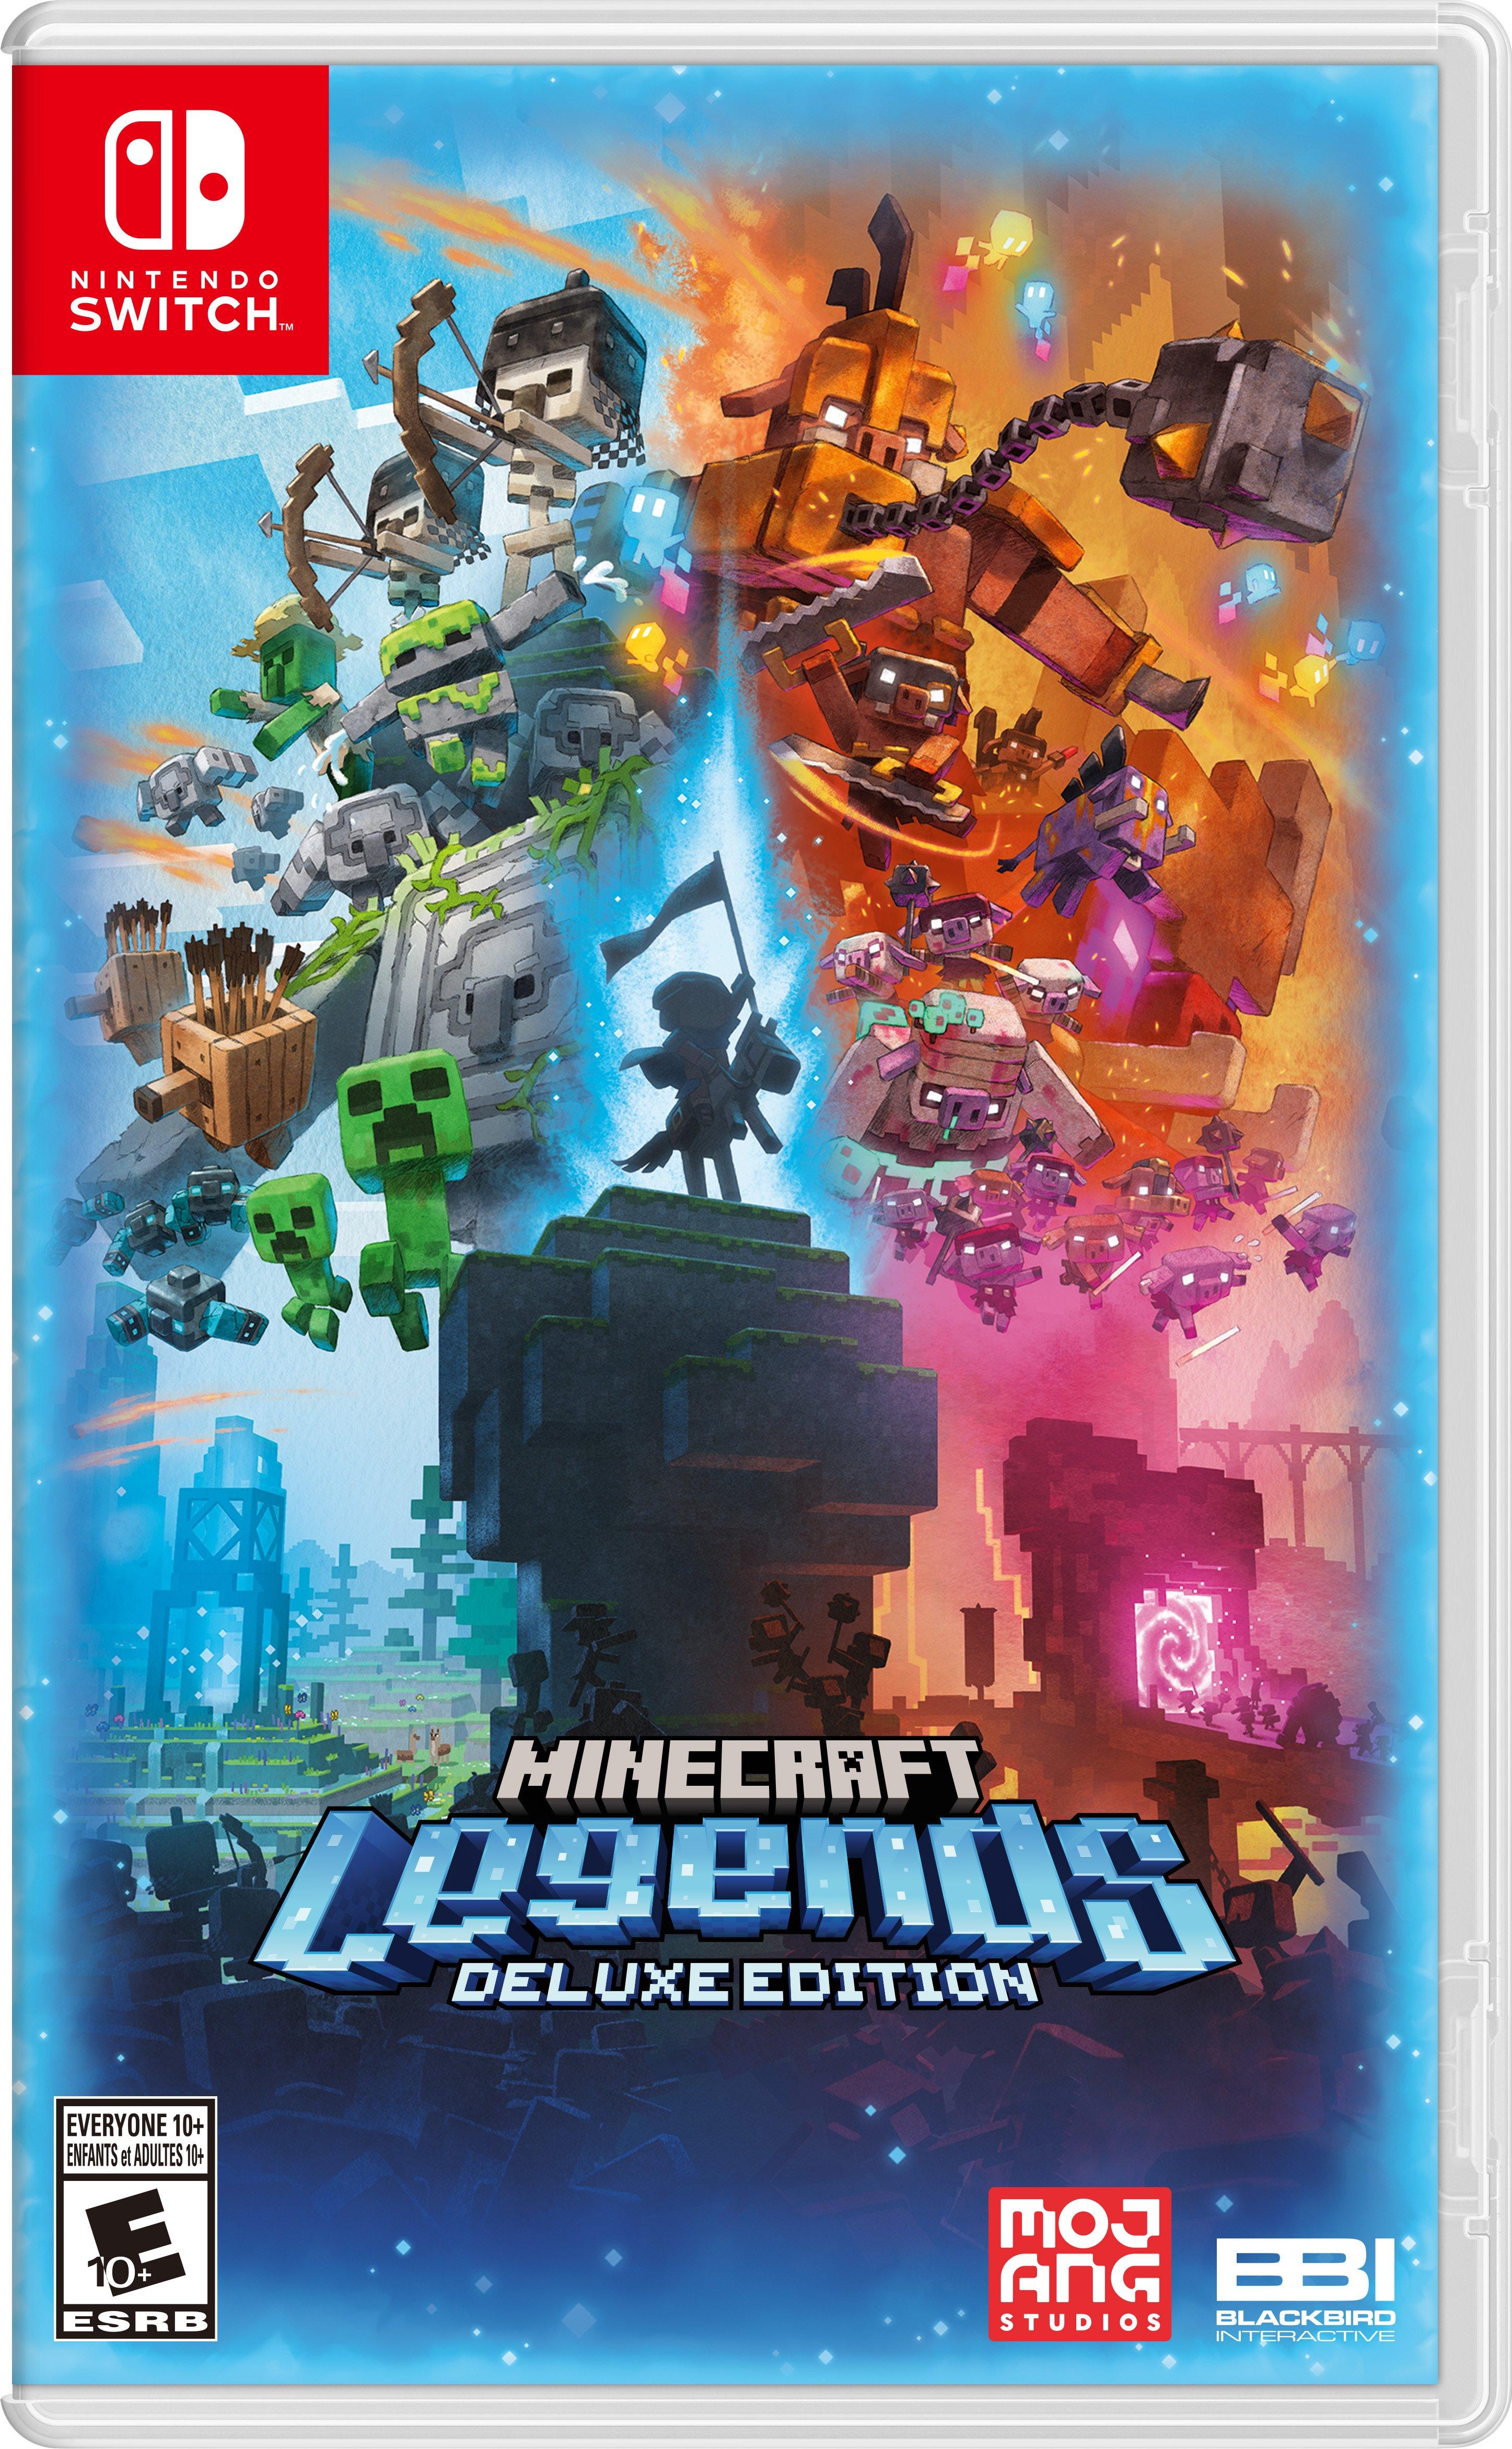 Minecraft Legends Deluxe Edition - Nintendo Switch | Mojang | GameStop